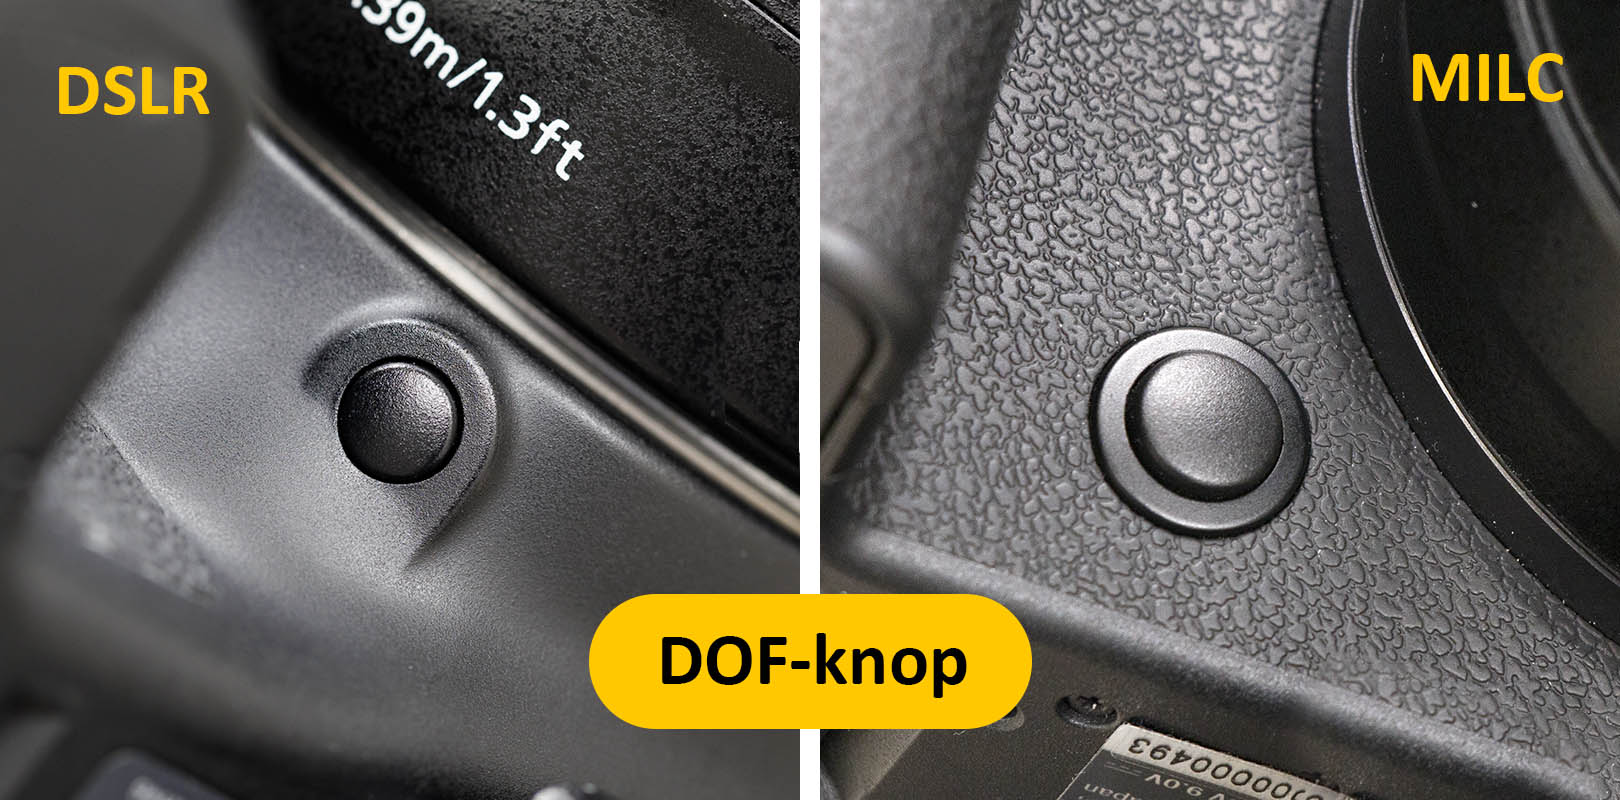 DOF-knop